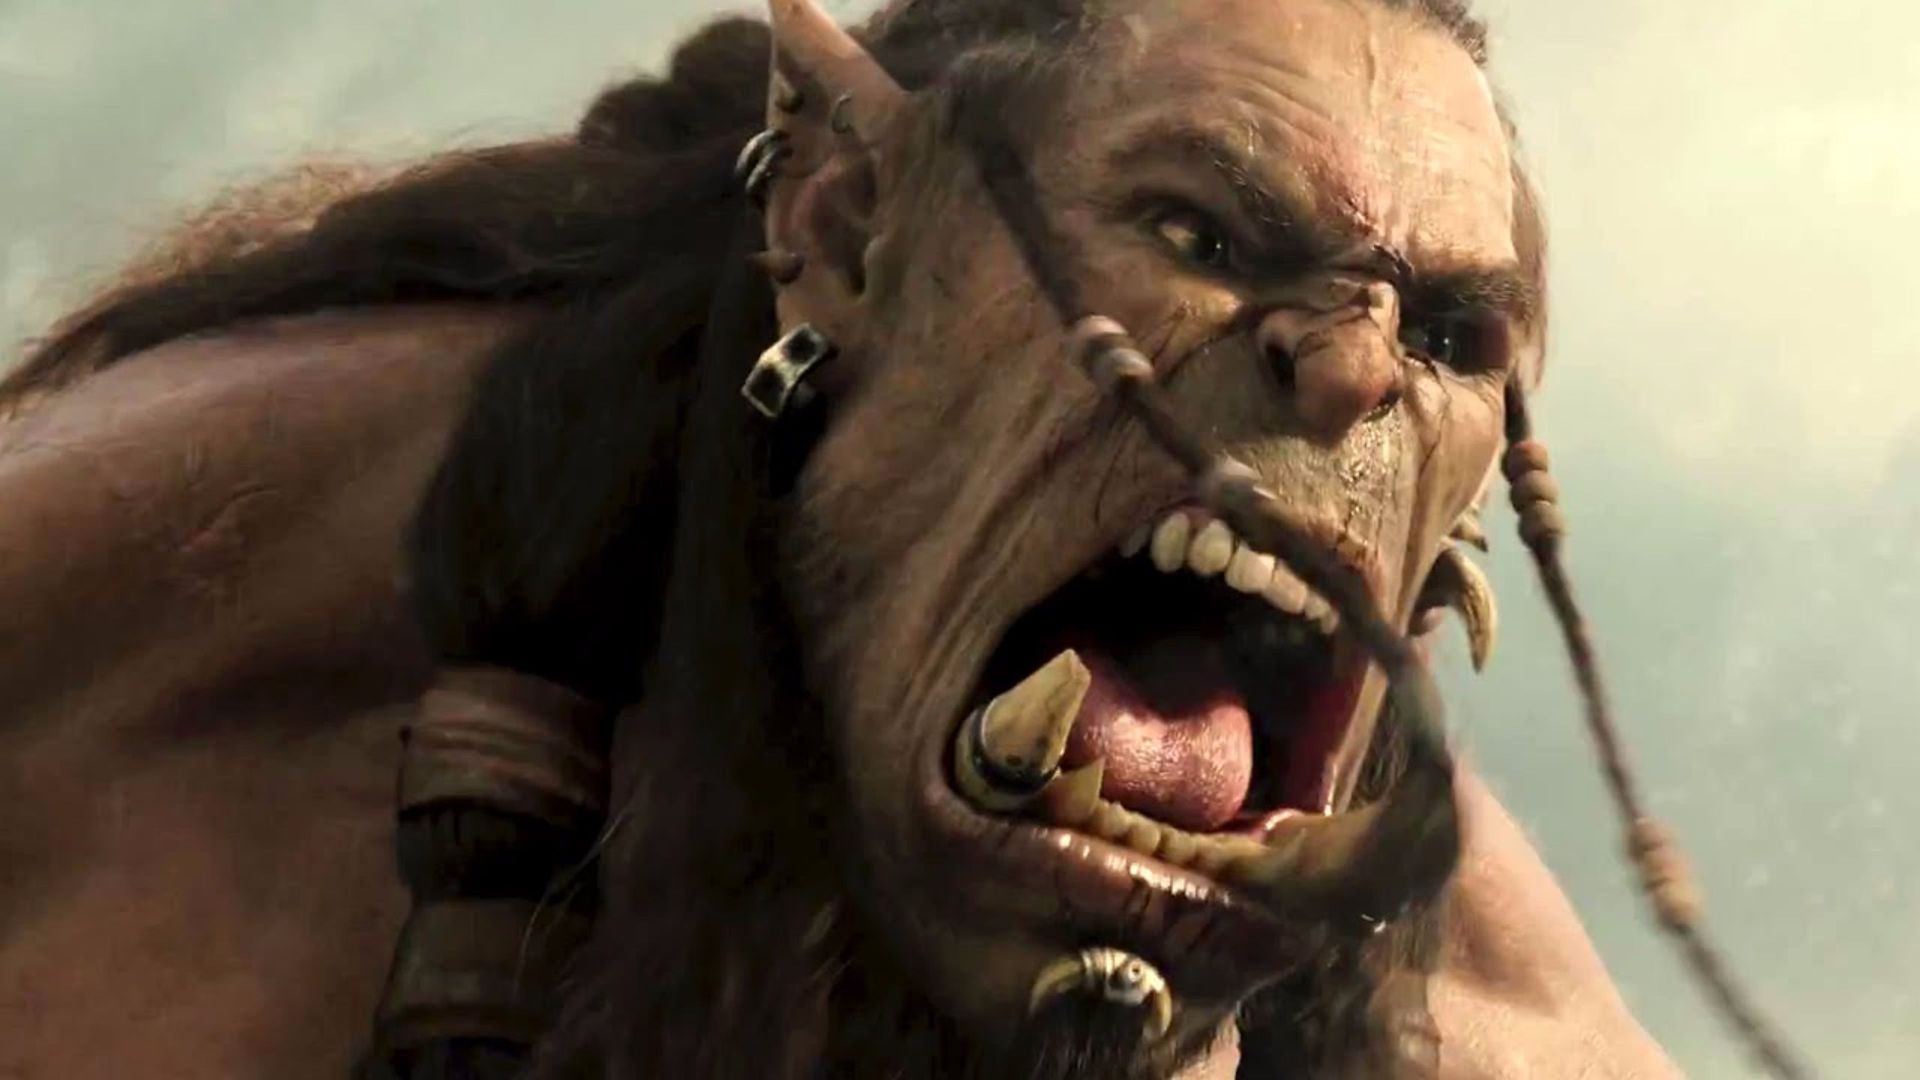 Filmowy "Warcraft" będzie klapą? Alarmujące prognozy